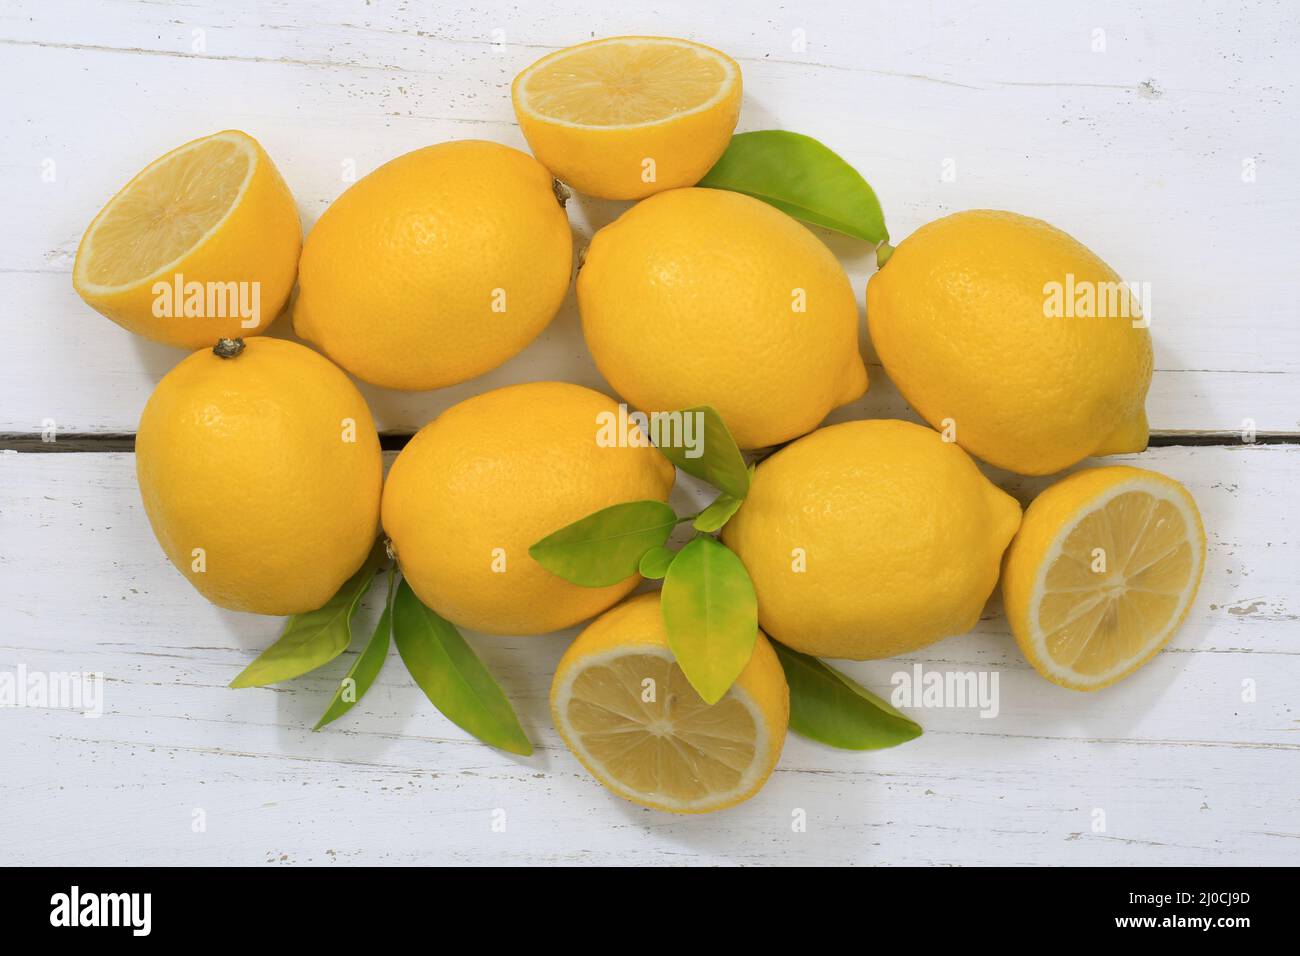 Lemon lemons fruits from above Stock Photo